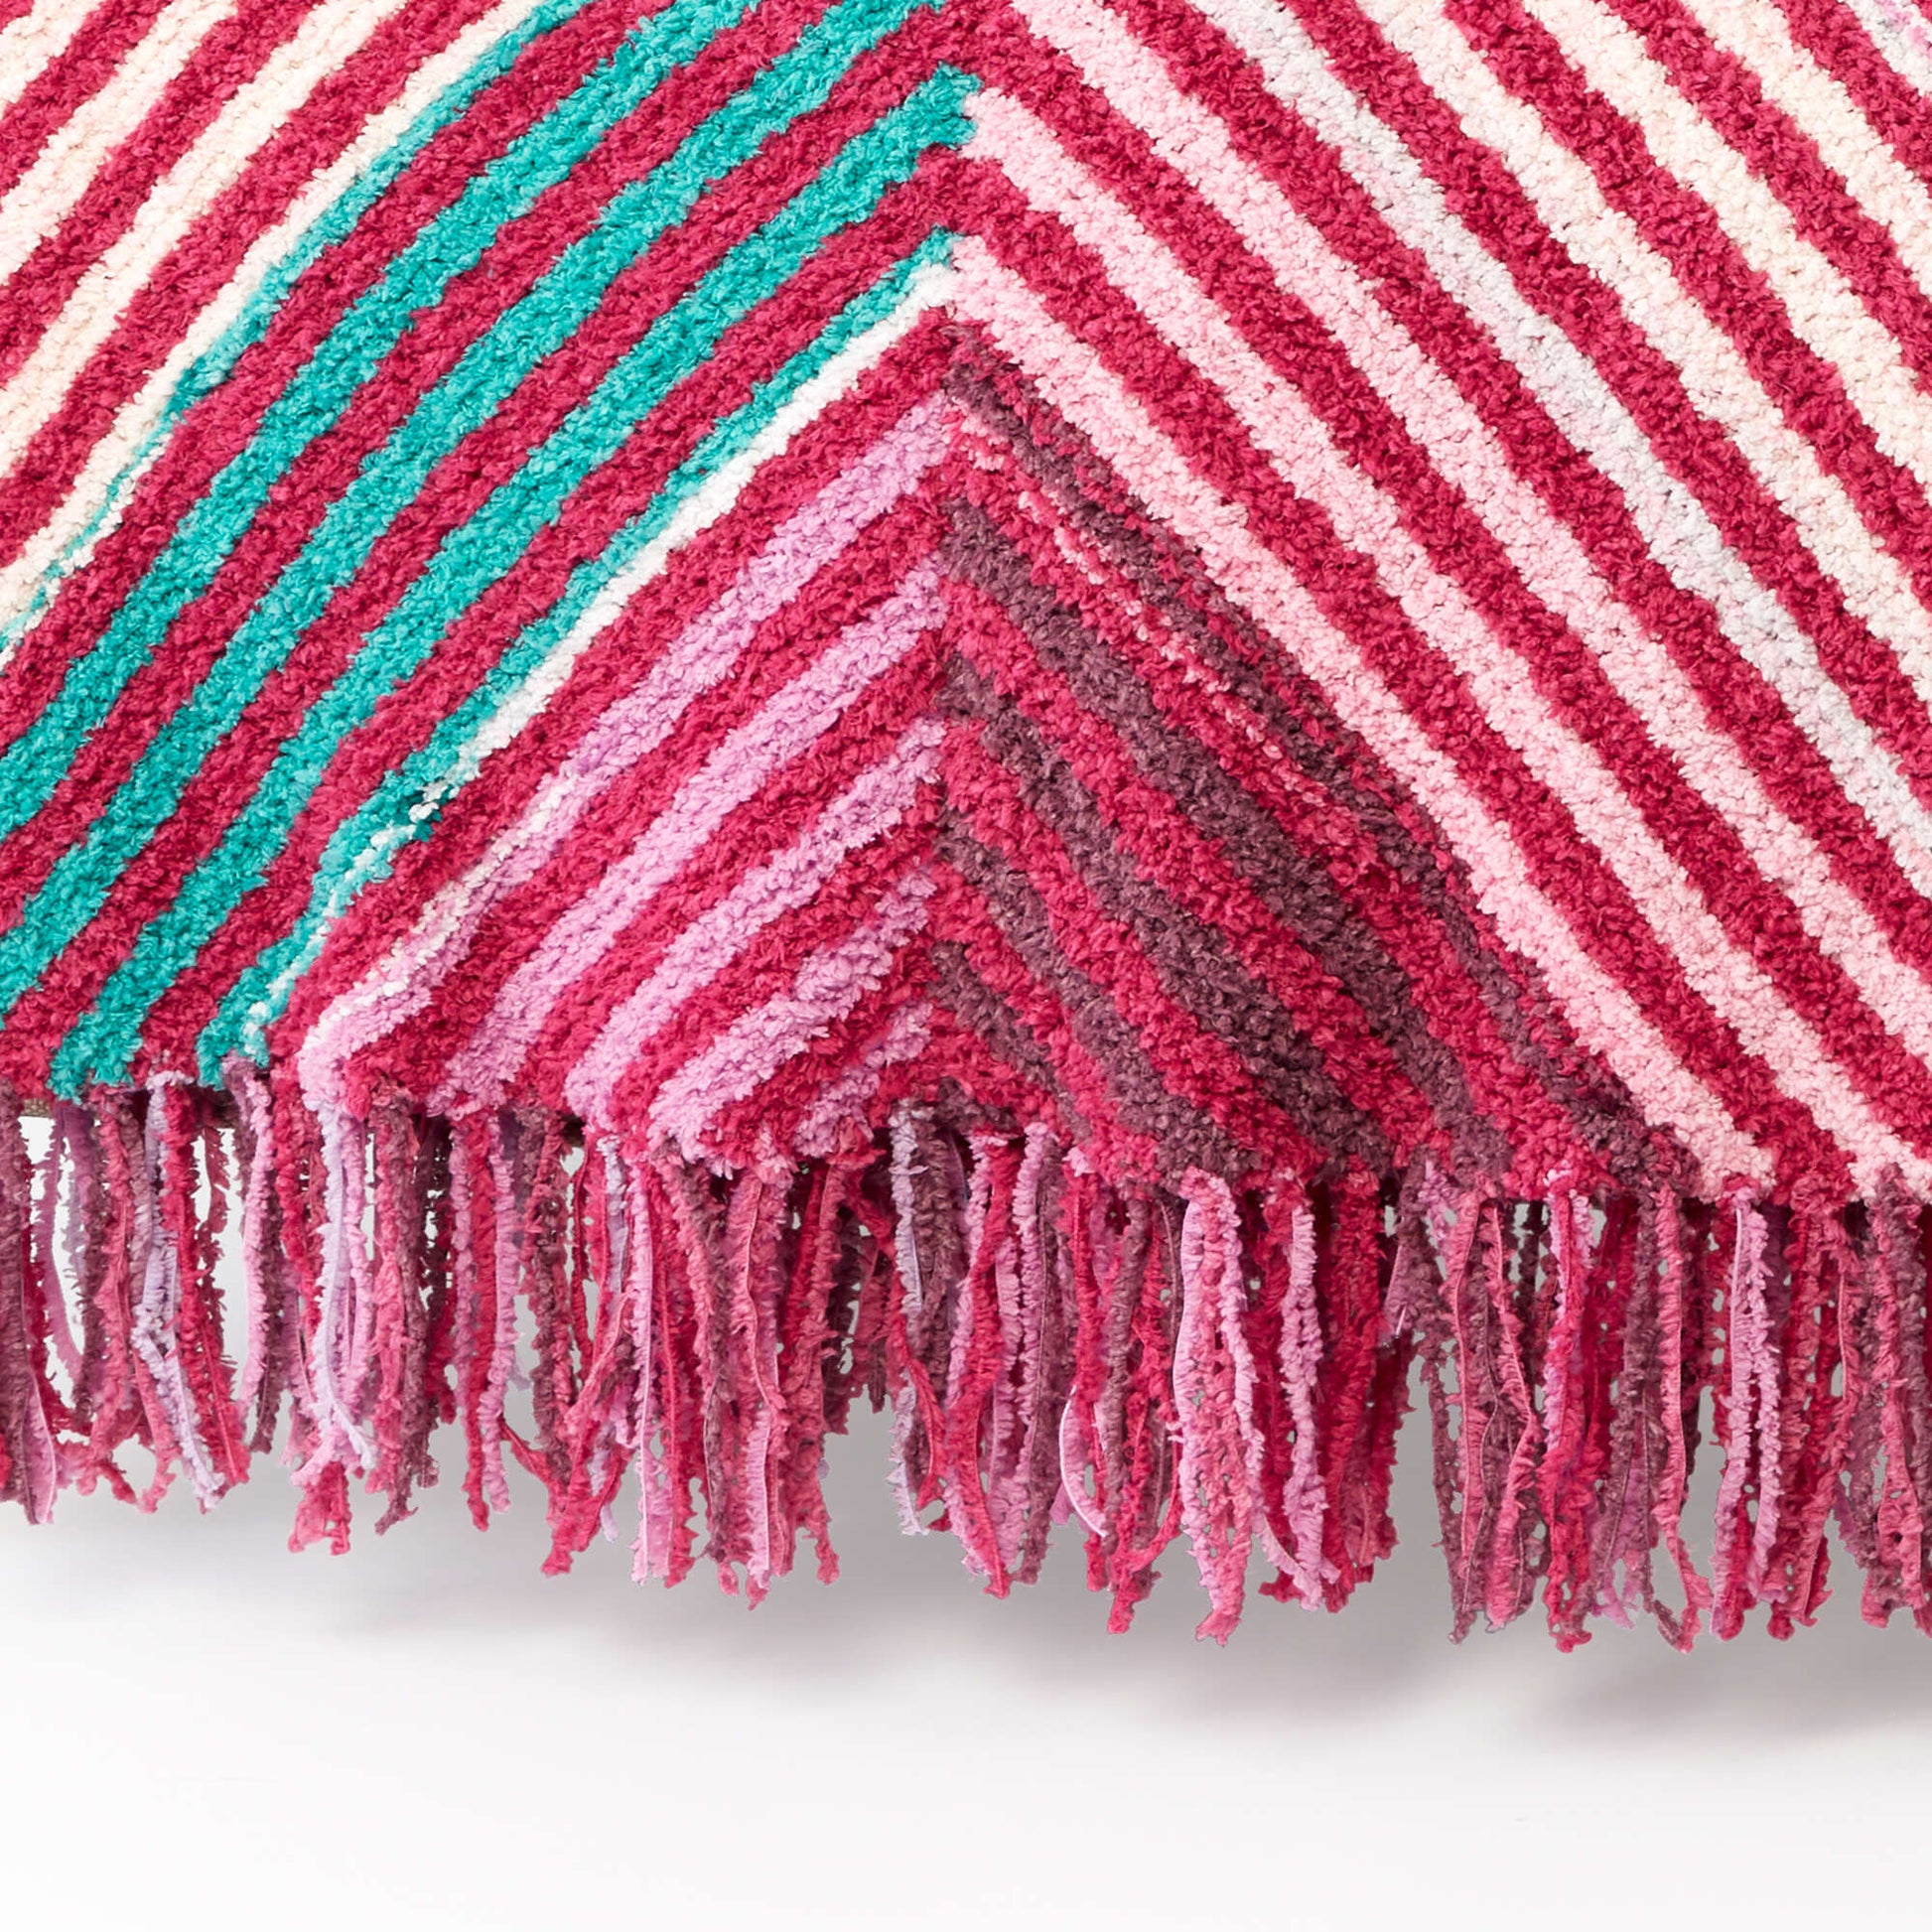 Bernat Book-Match Bias Knit Blanket Knit Blanket made in Bernat Blanket Breezy yarn